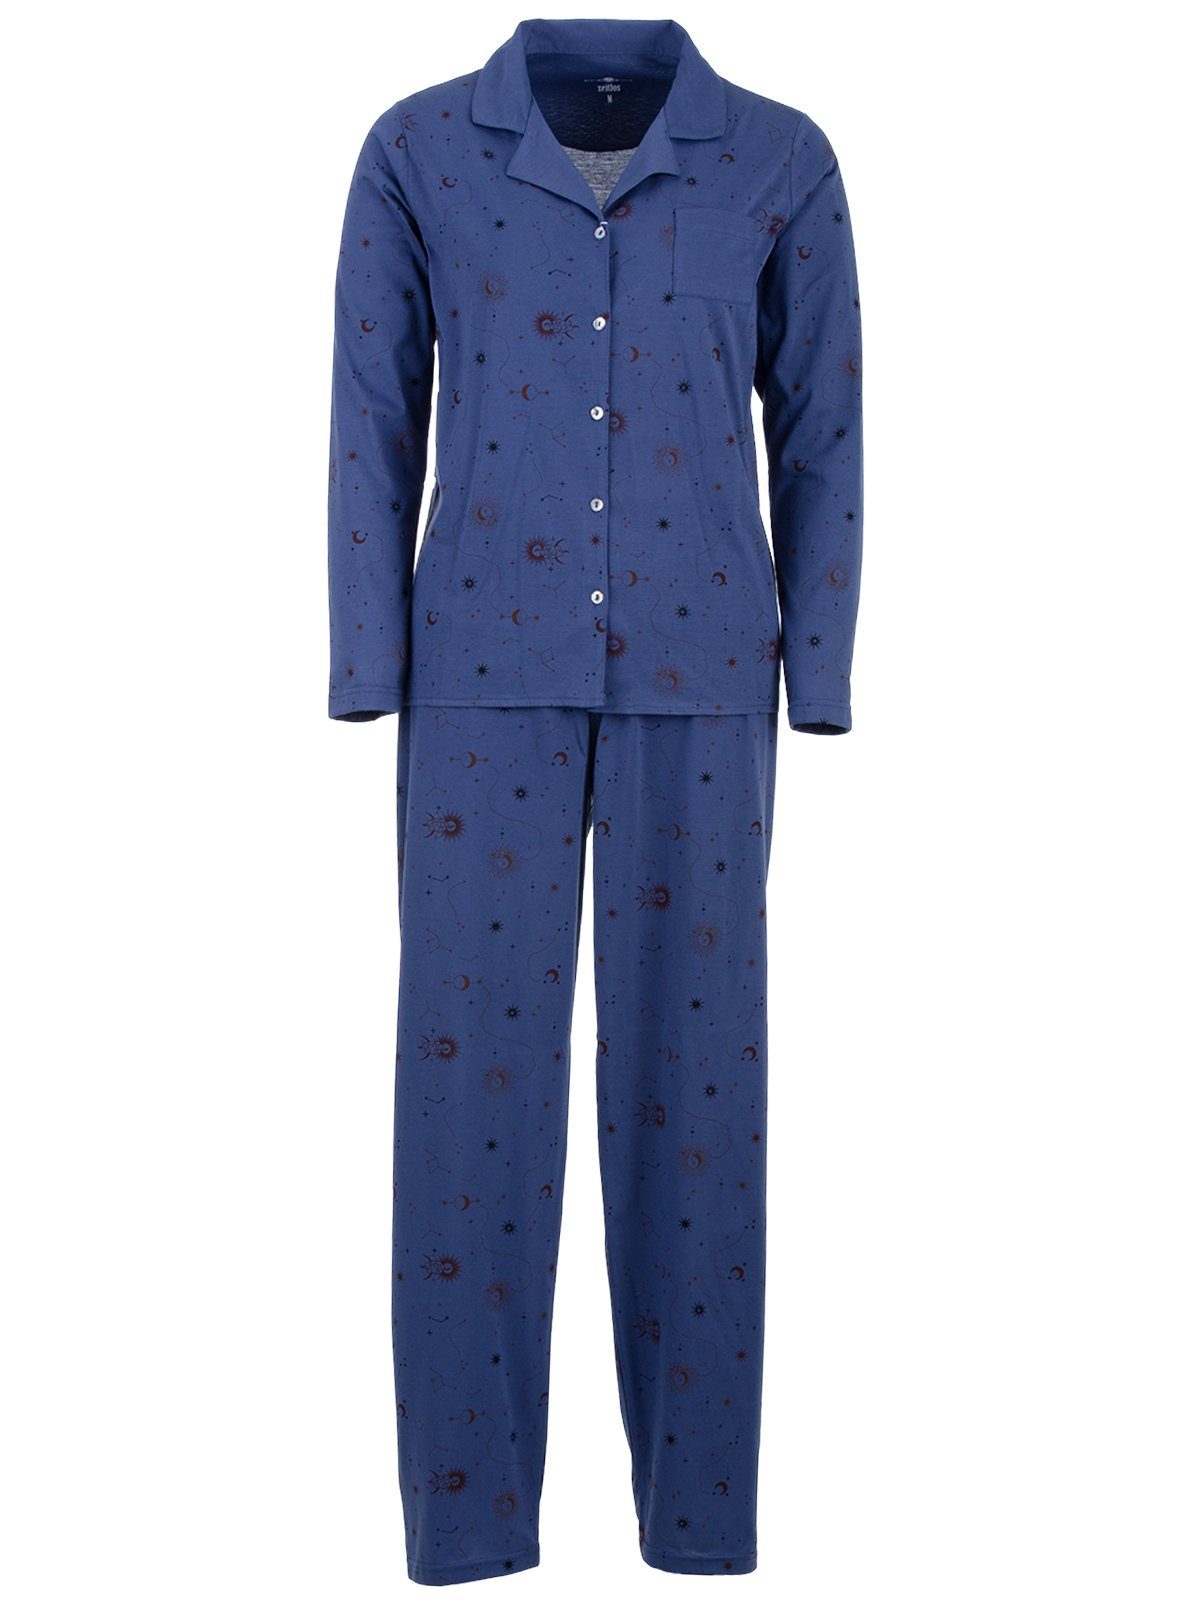 Mond - blau Langarm Pyjama zeitlos Sterne Schlafanzug Set